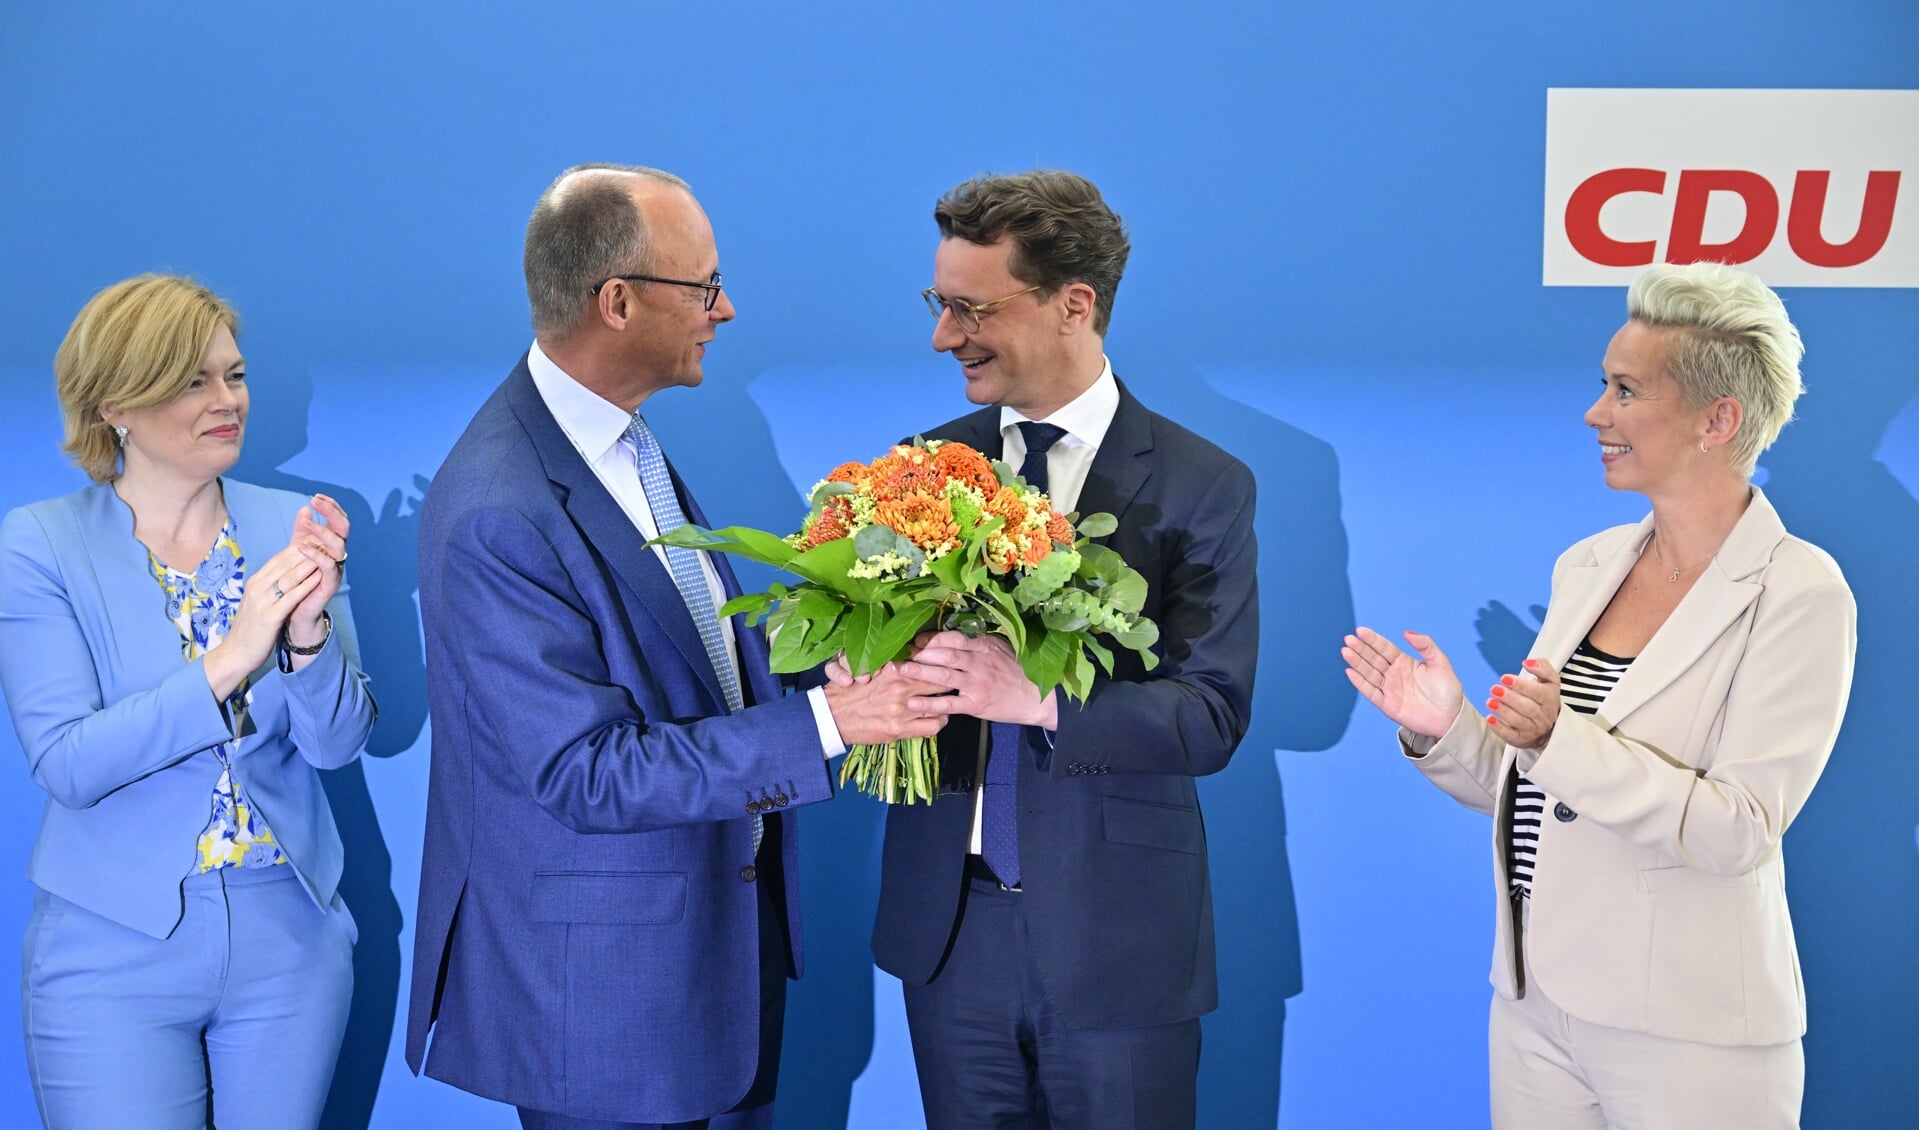 CDU-lijsttrekker Hendrik Wüst (midden) won zondag de verkiezingen in Noordrijn-Westfalen. De Oekraïne-politiek van de landelijke CDU-leider Friedrich Merz (links) was een onmisbare steun in de rug.